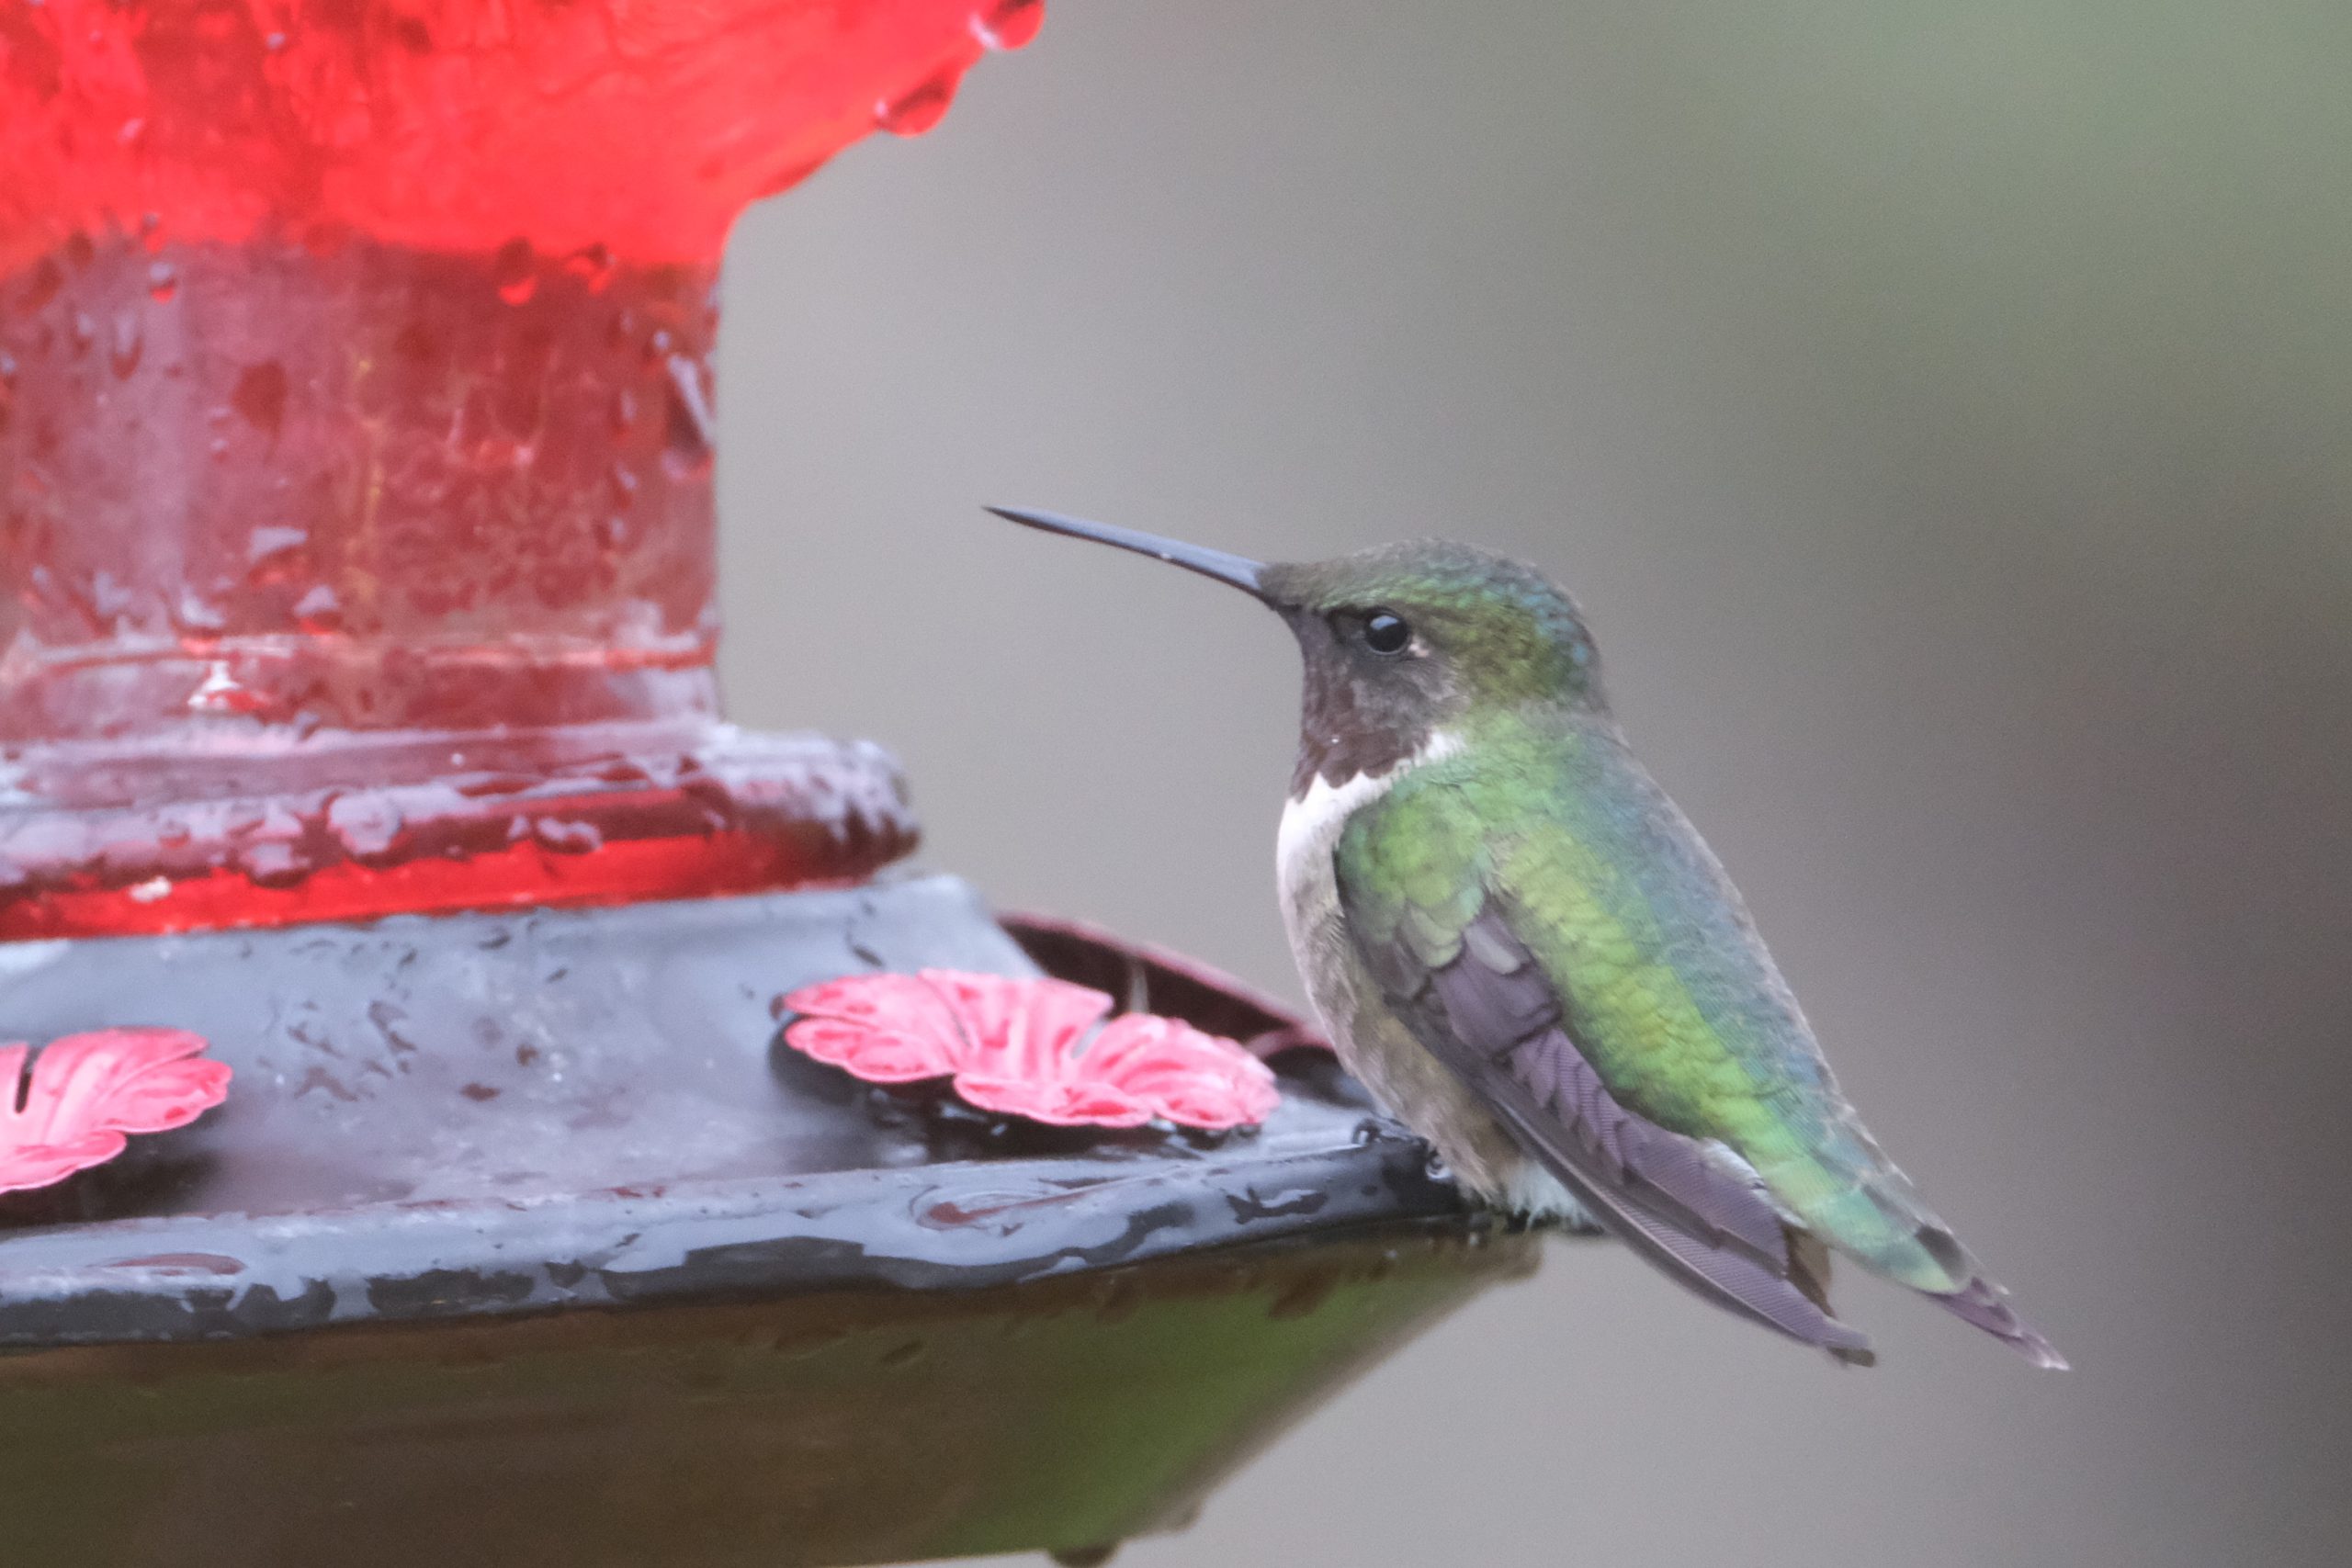 Recette de nectar pour attirer les colibris